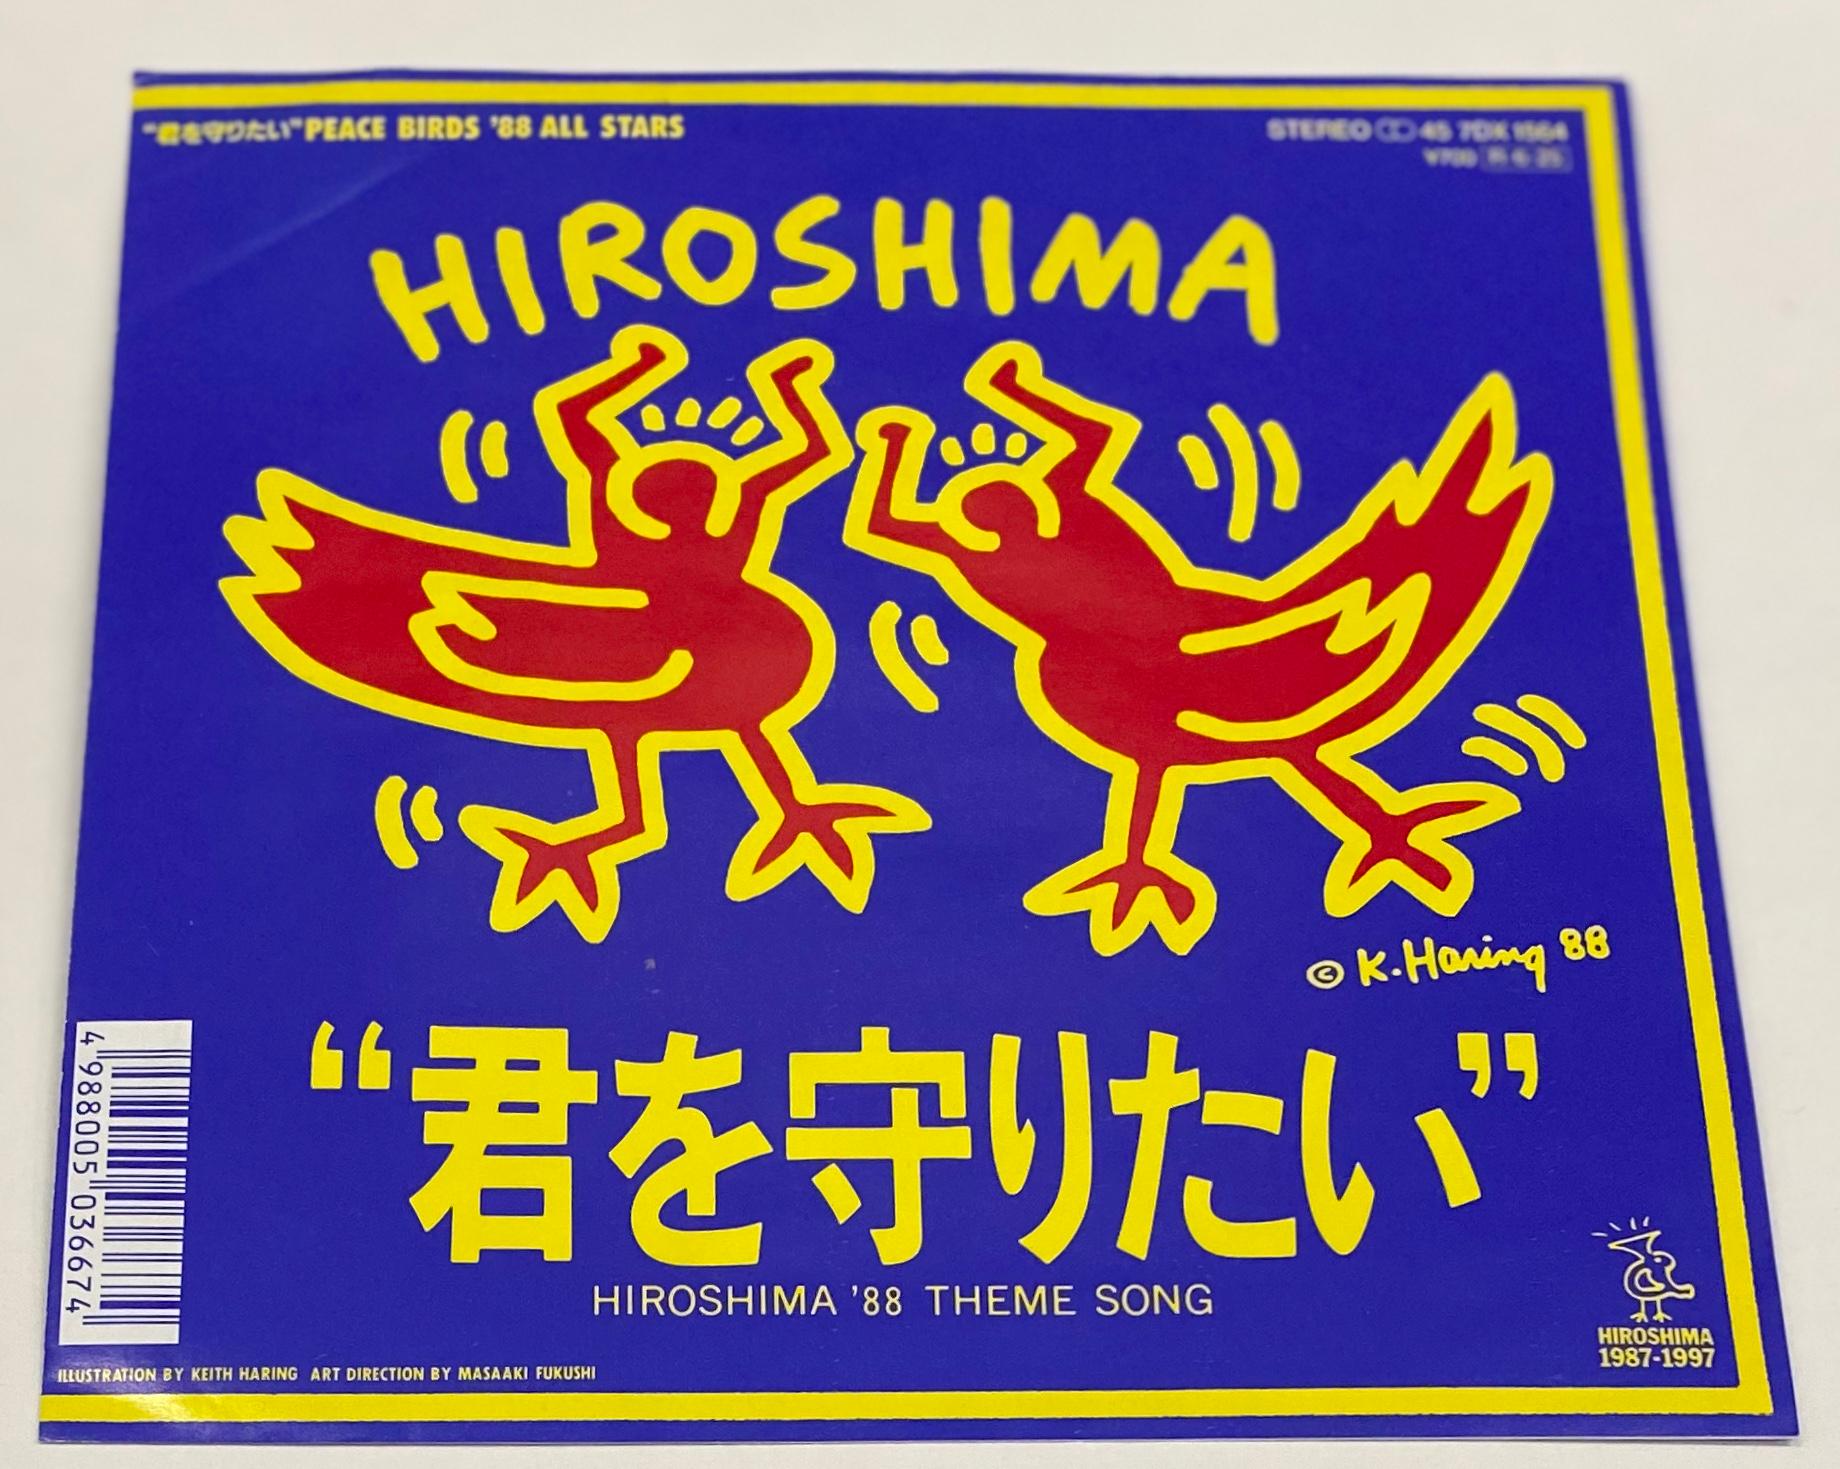 Rare Original Keith Haring Vinyl Record Art (Keith Haring Hiroshima)  1